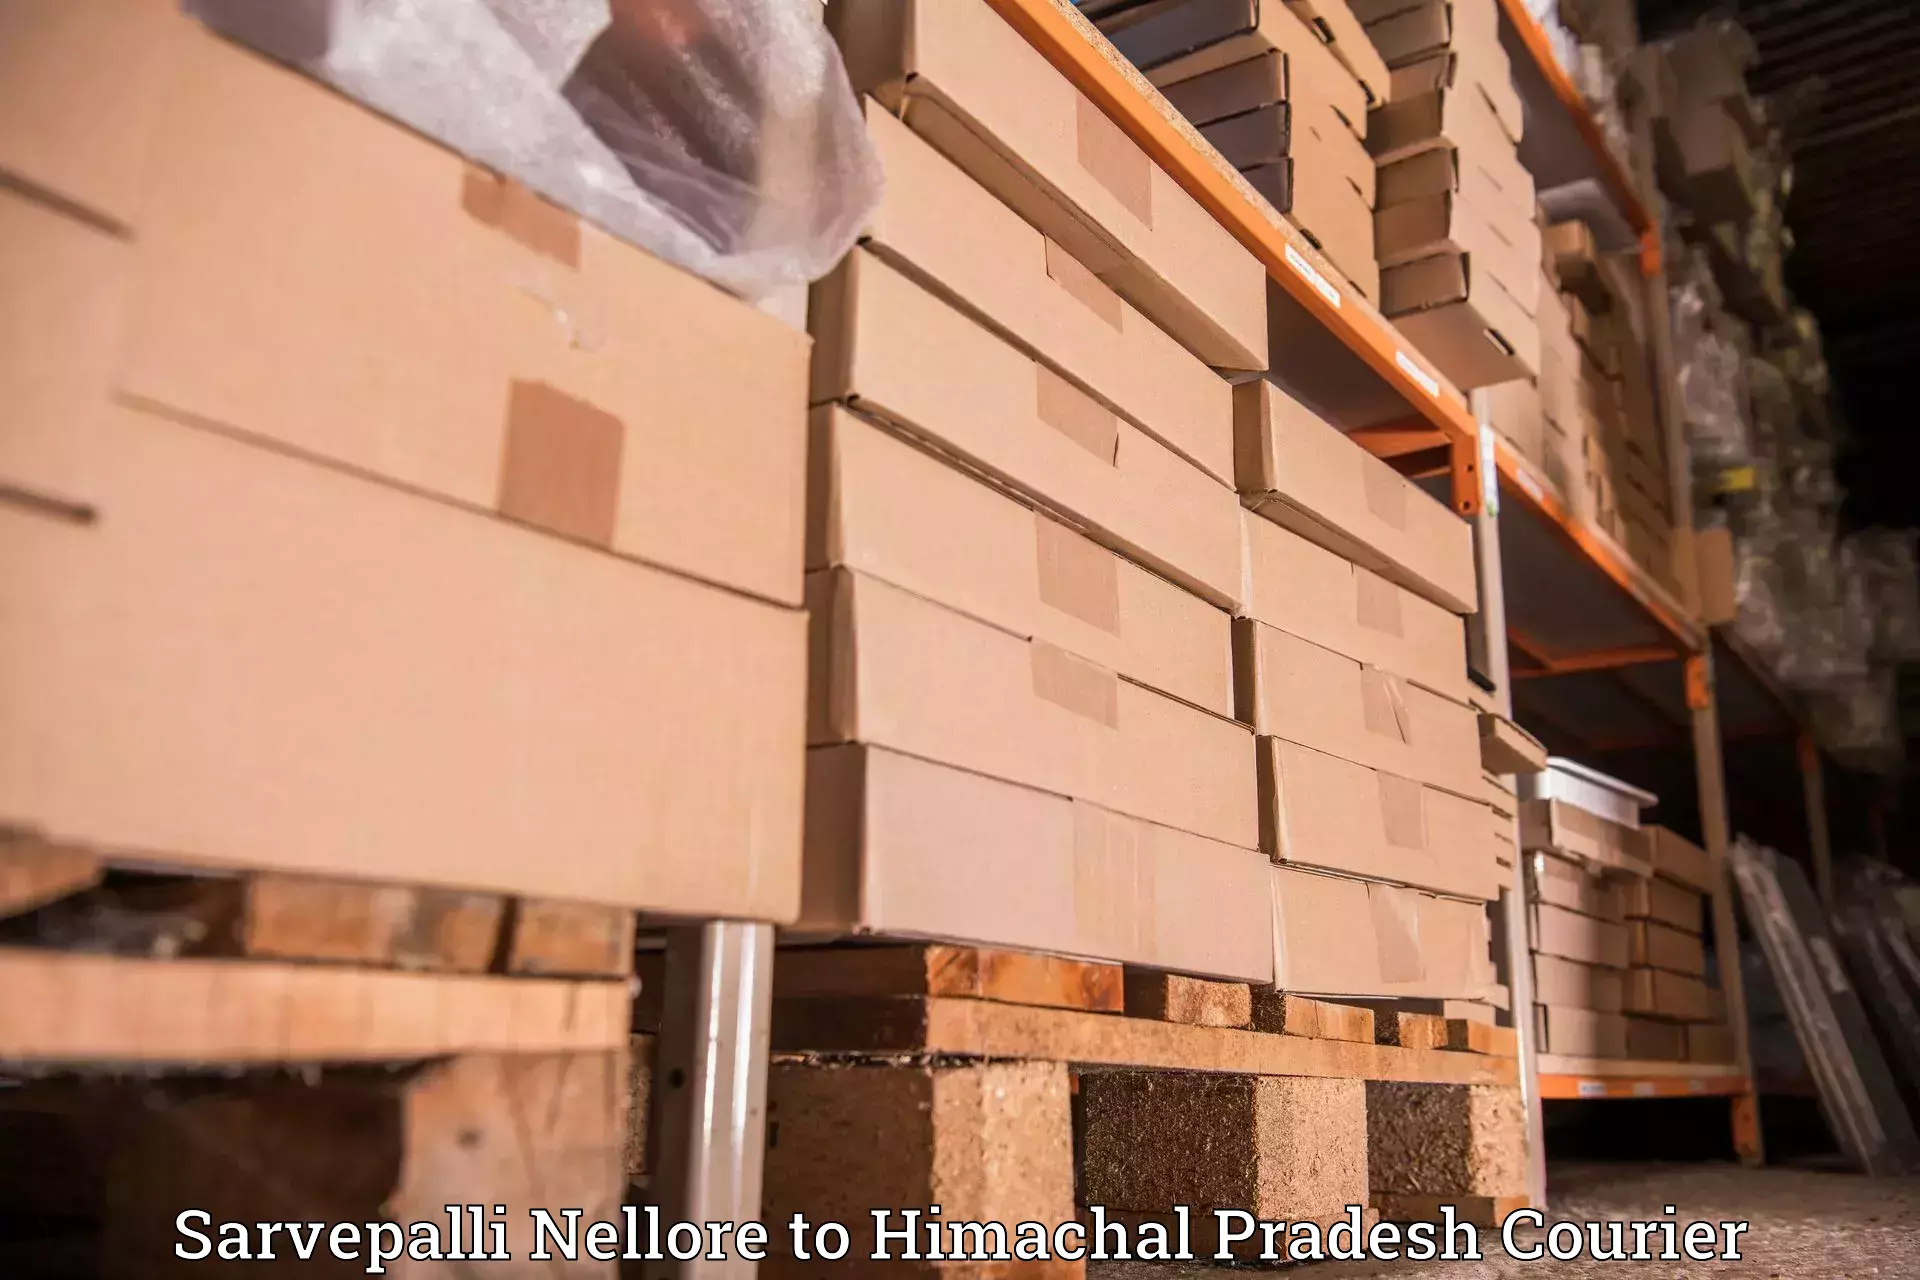 Optimized shipping routes Sarvepalli Nellore to Naina Devi